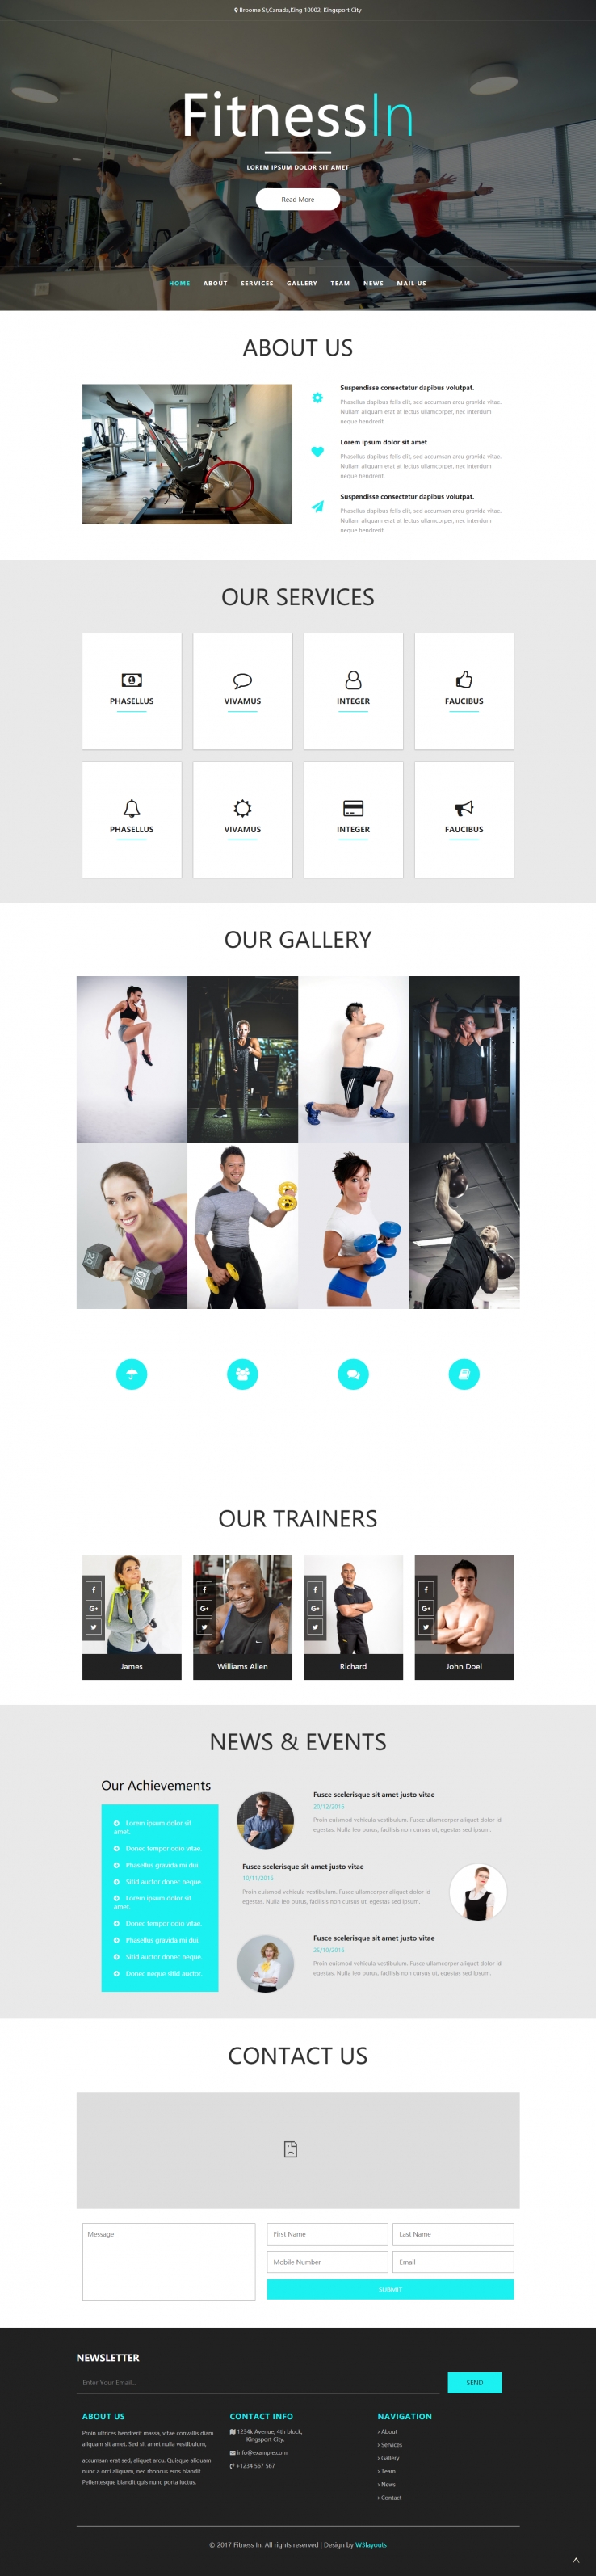 蓝色简洁风格的健身服务中心整站网站源码下载